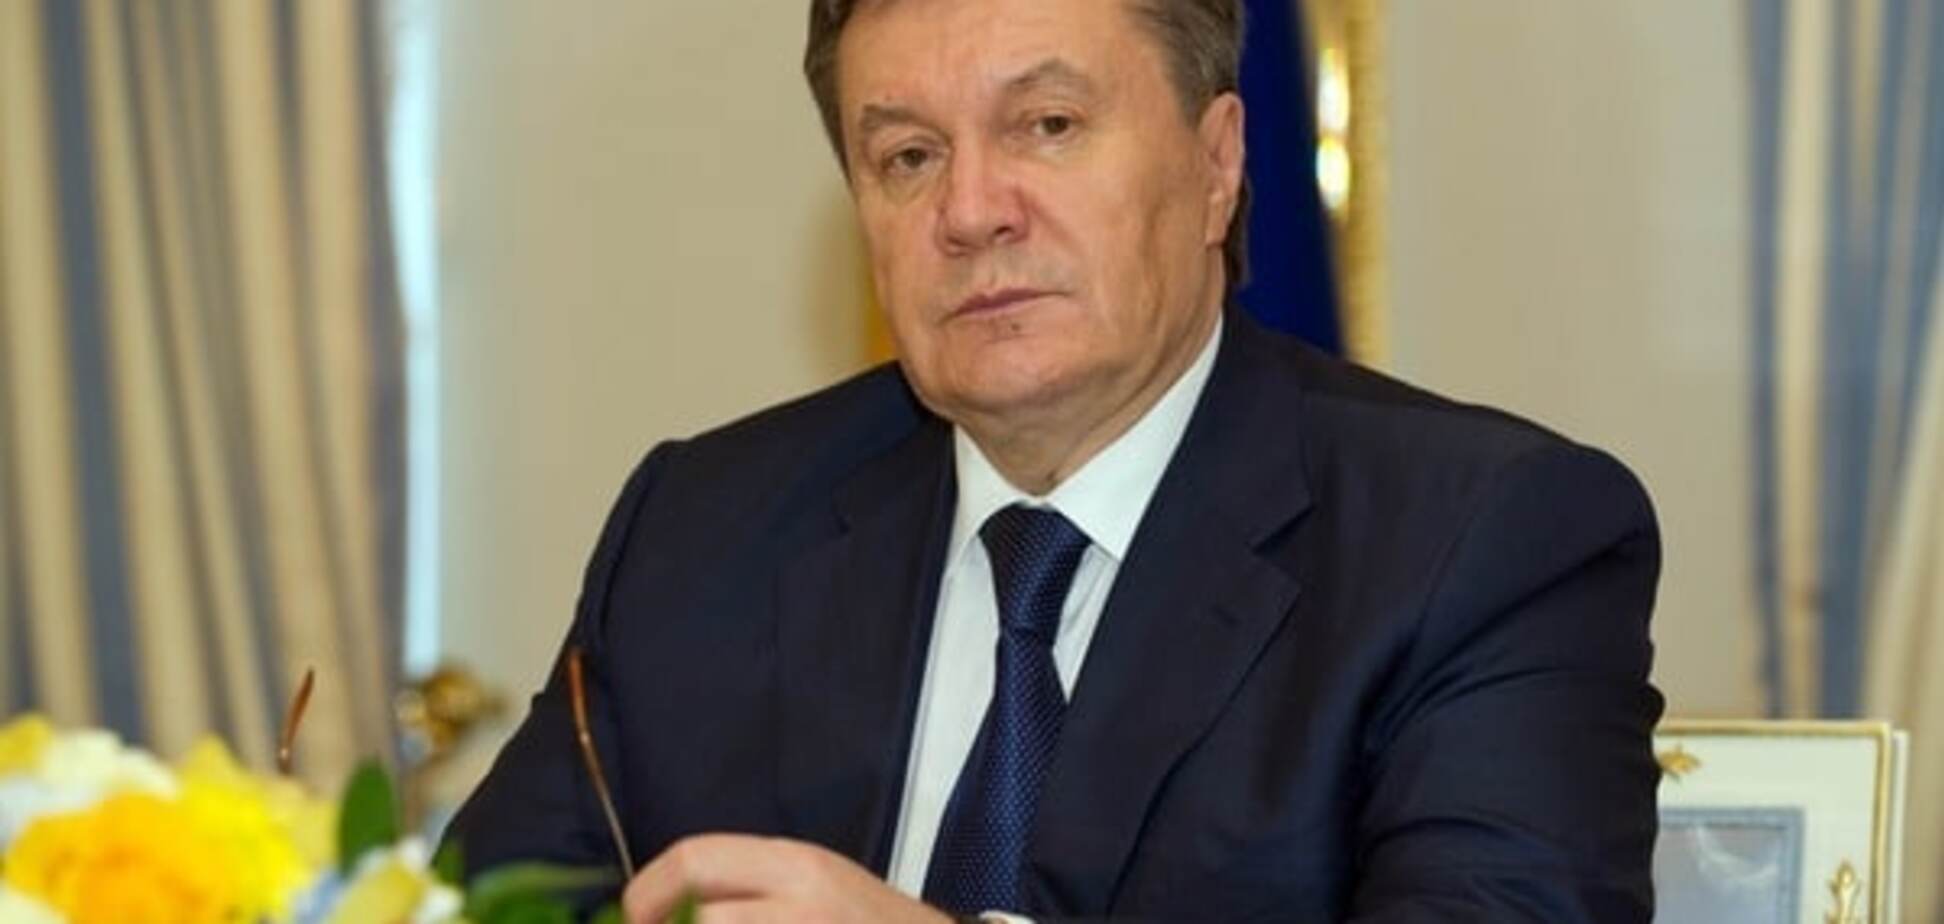 Есть доказательства, что жестко разогнать Майдан приказал лично Янукович - ГПУ